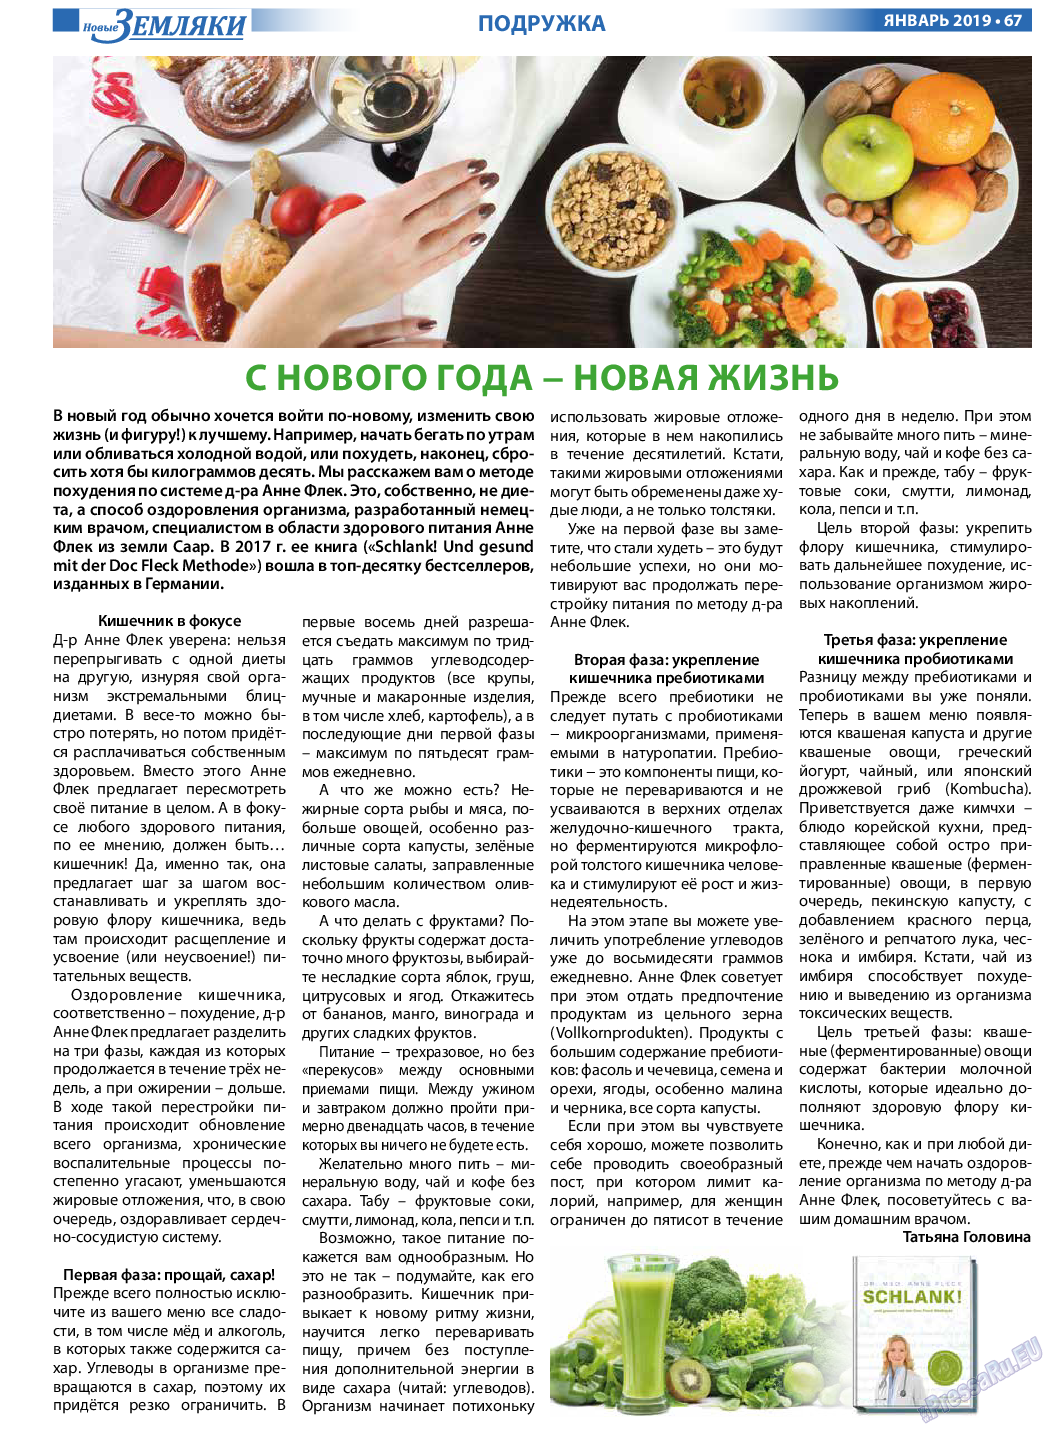 Новые Земляки, газета. 2019 №1 стр.67